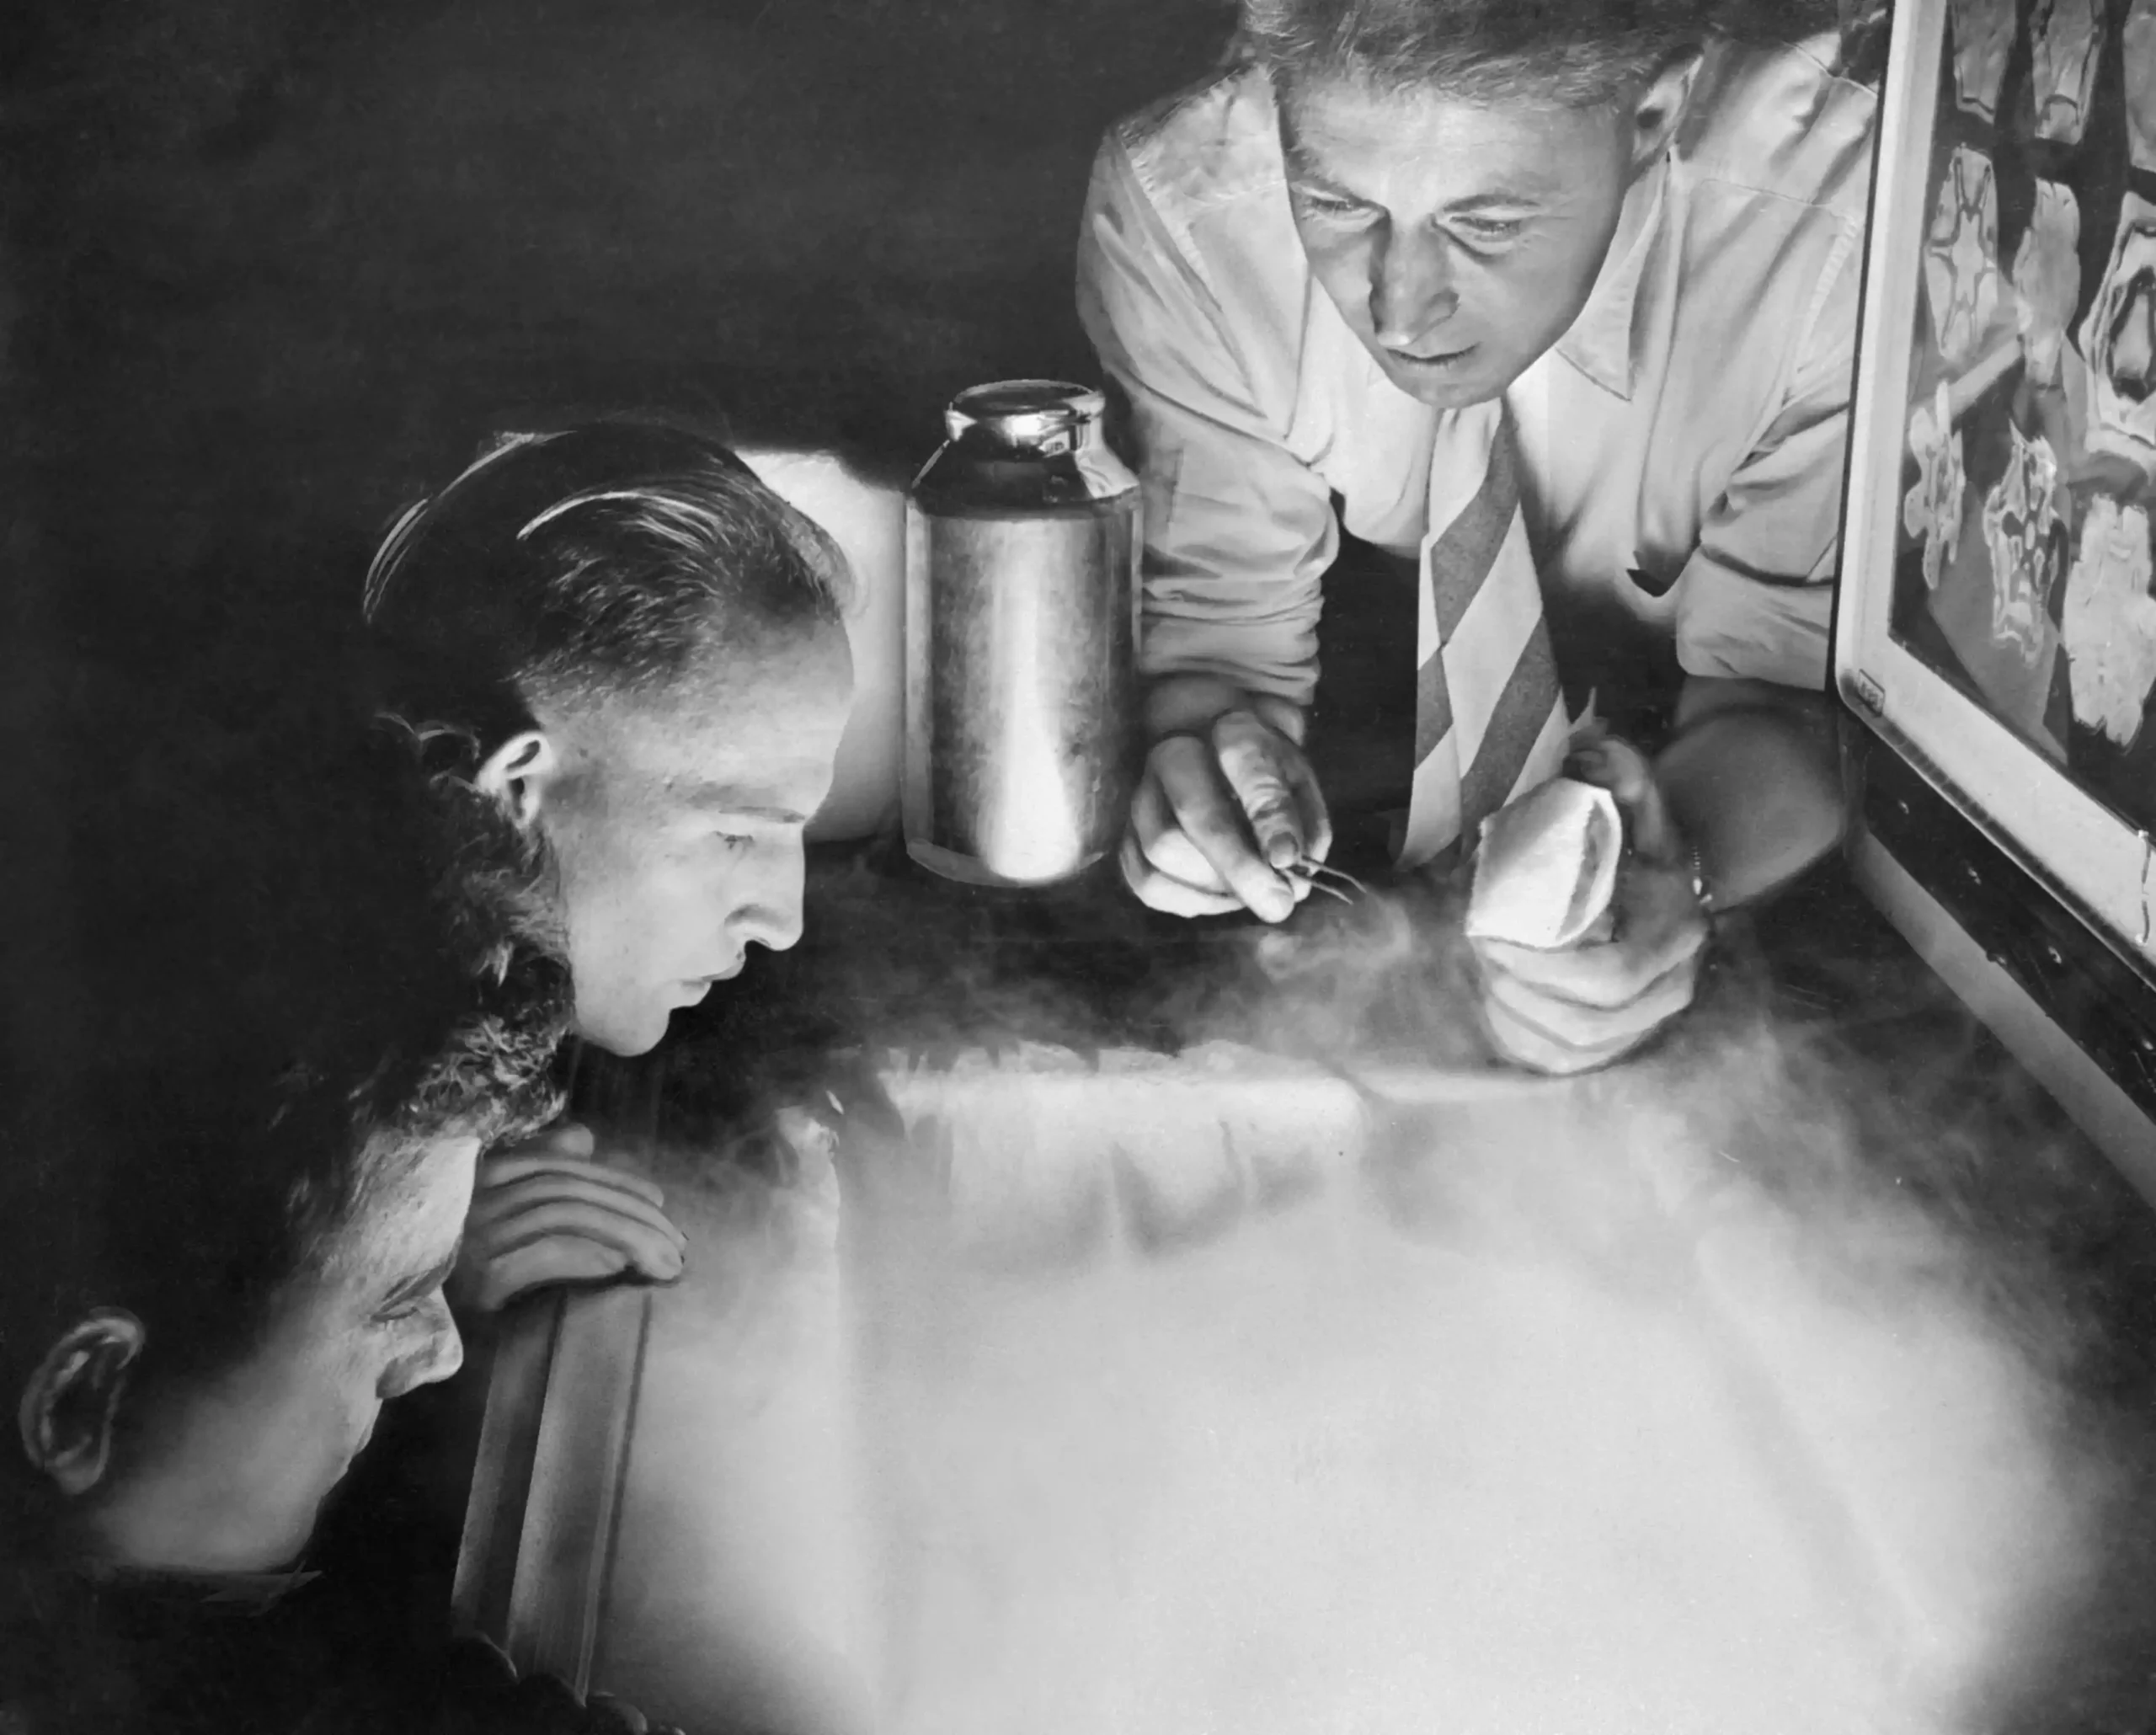 Трое ученых парят над морозильной камерой, из которой вырывается холодный воздух